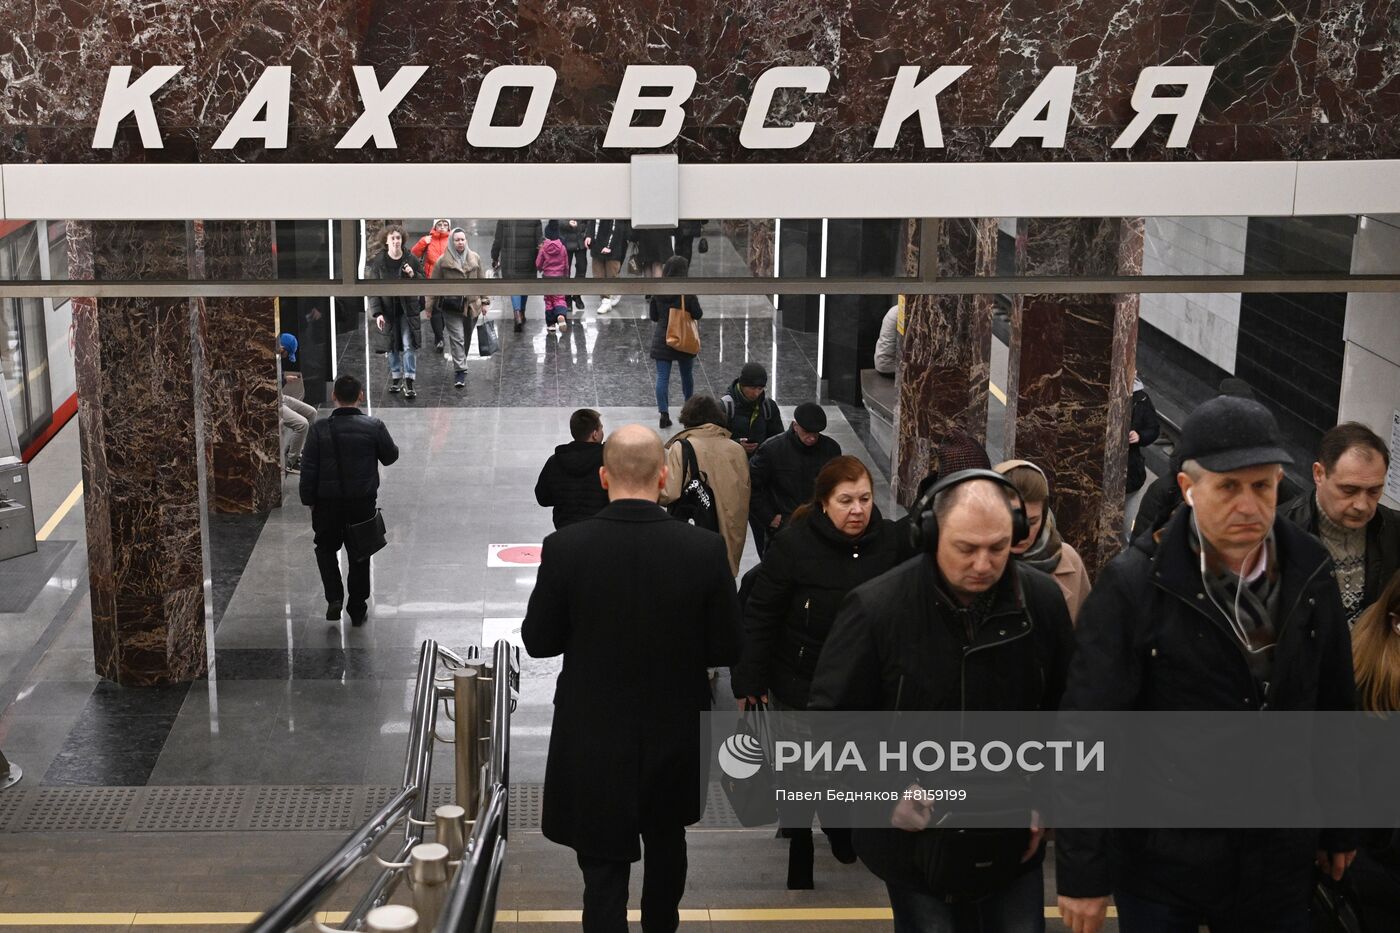 Западный вестибюль станции метро "Каховская" БКЛ открыли после реконструкции